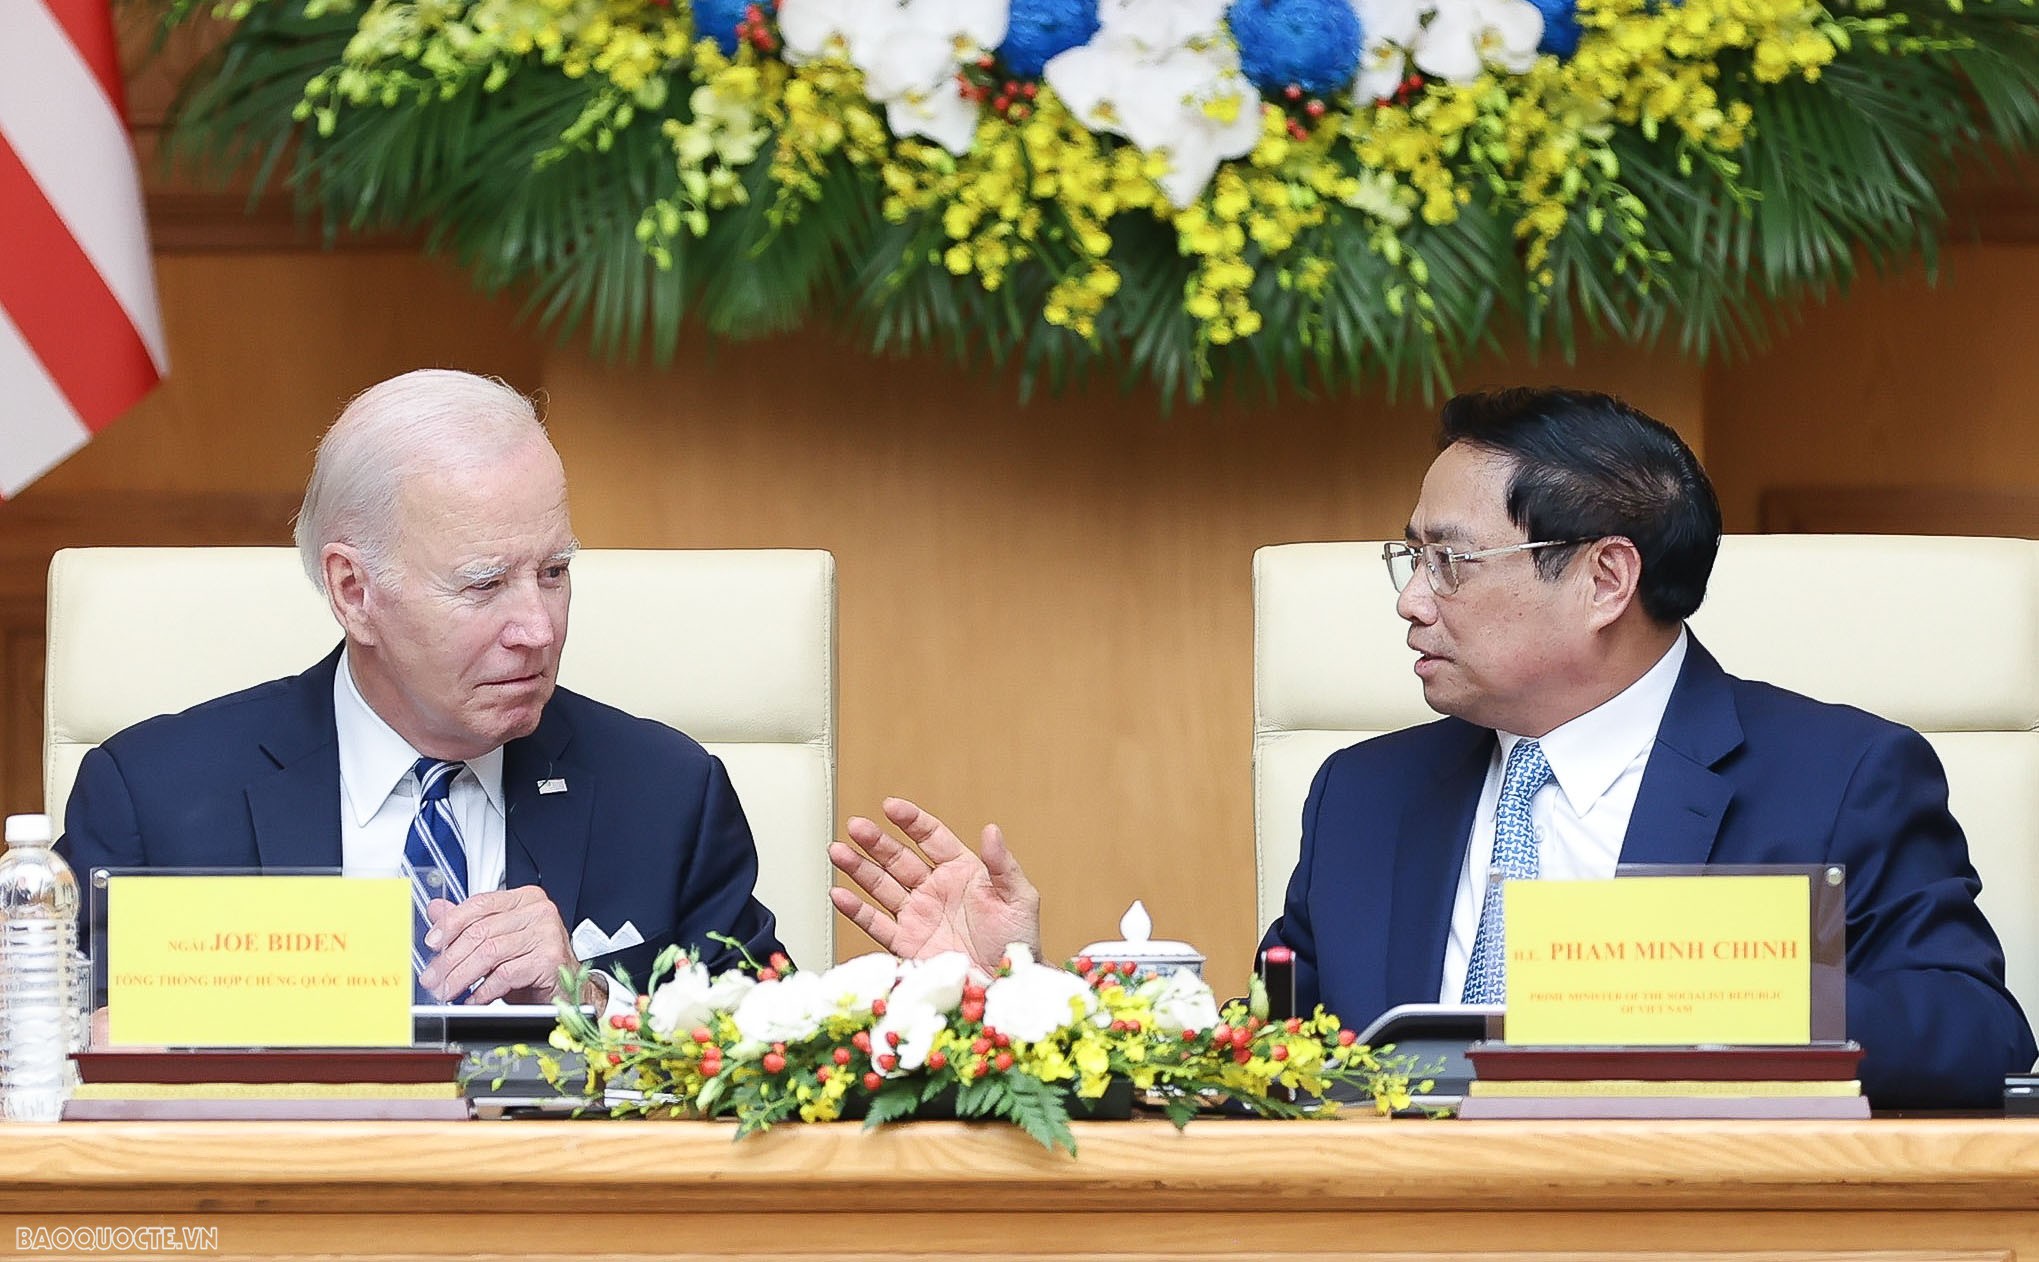 Thủ tướng Phạm Minh Chính và Tổng thống Joe Biden đều bày tỏ tin tưởng về những tác động tích cực của khuôn khổ Đối tác chiến lược toàn diện đối với quan hệ thương mại, đầu tư, đổi mới sáng tạo giữa Việt Nam và Hoa Kỳ; thống nhất đưa công nghệ, đổi mới sáng tạo và đầu tư thực sự trở thành trụ cột mới của quan hệ Đối tác chiến lược toàn diện Việt  Nam - Hoa Kỳ.